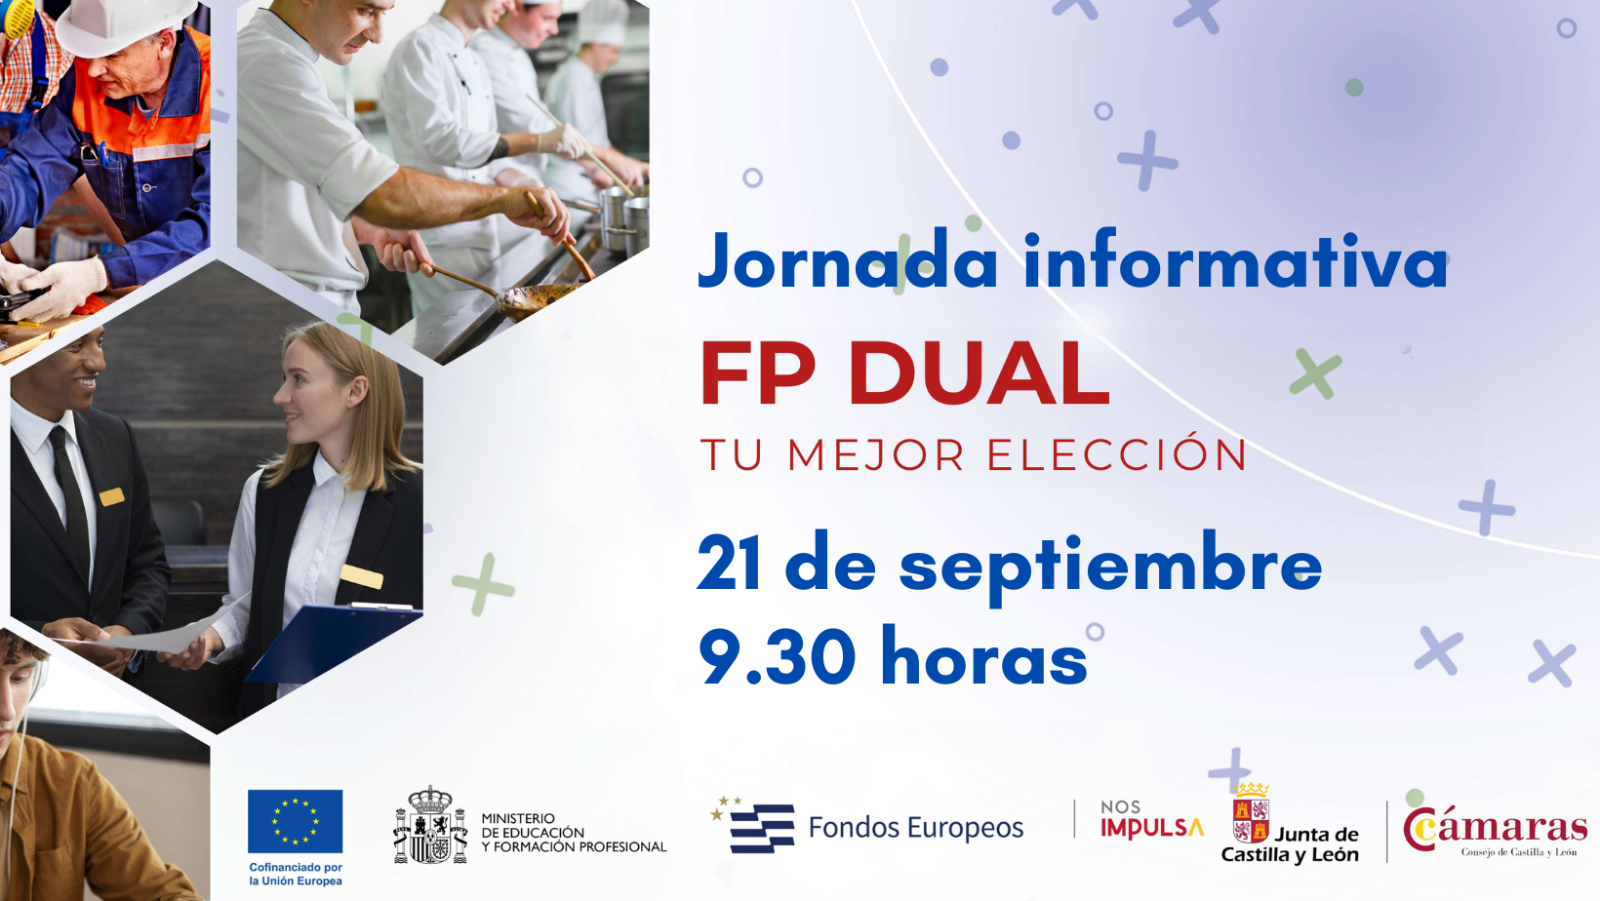 La Cámara de Comercio de Soria celebra una jornada online sobre FP Dual dirigida a todas las empresas de la provincia